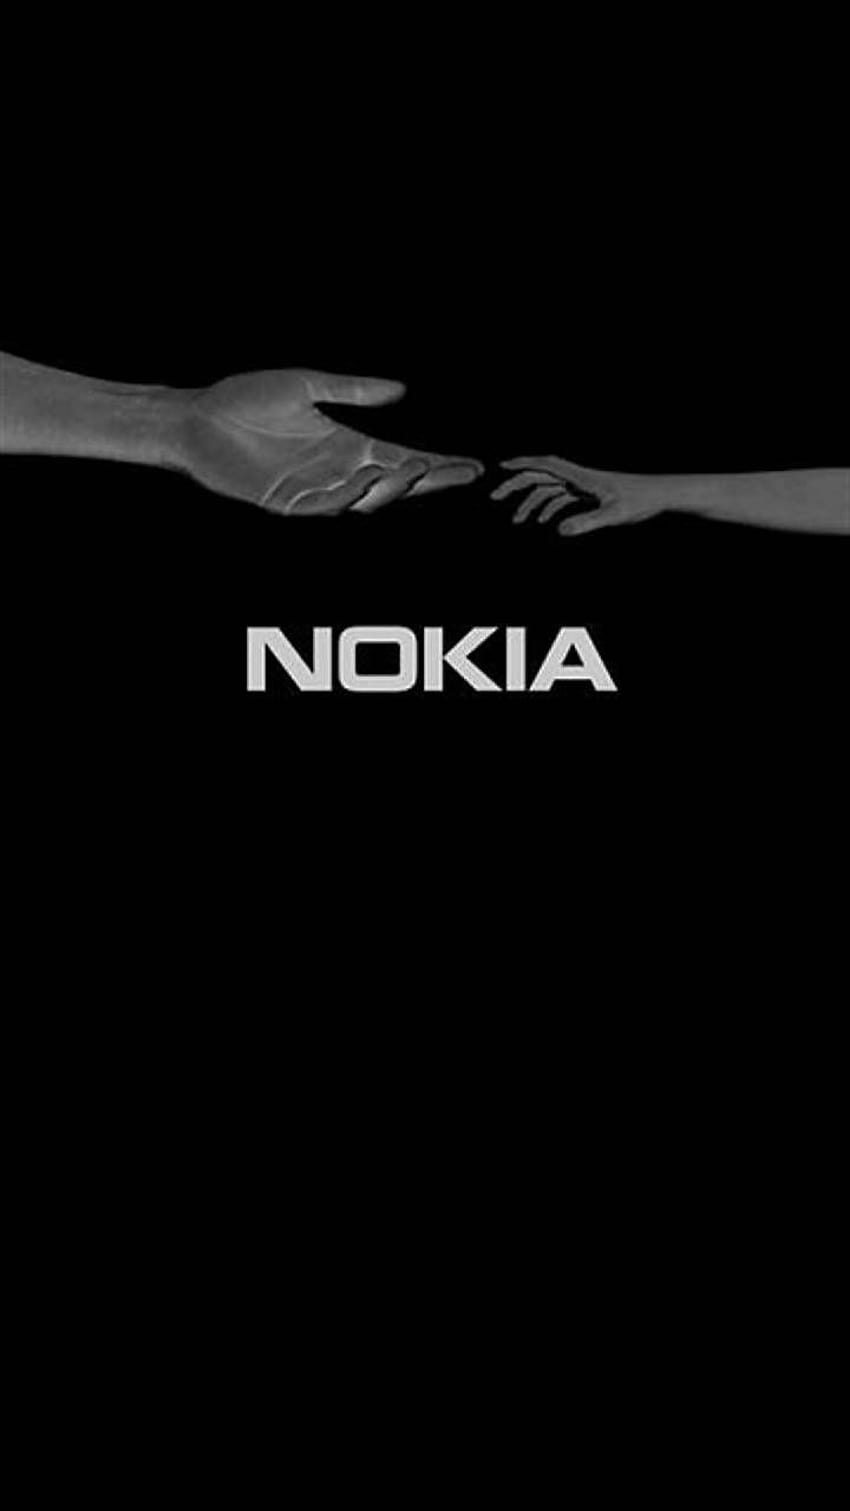 Czarna Nokia, logo Nokii Tapeta na telefon HD